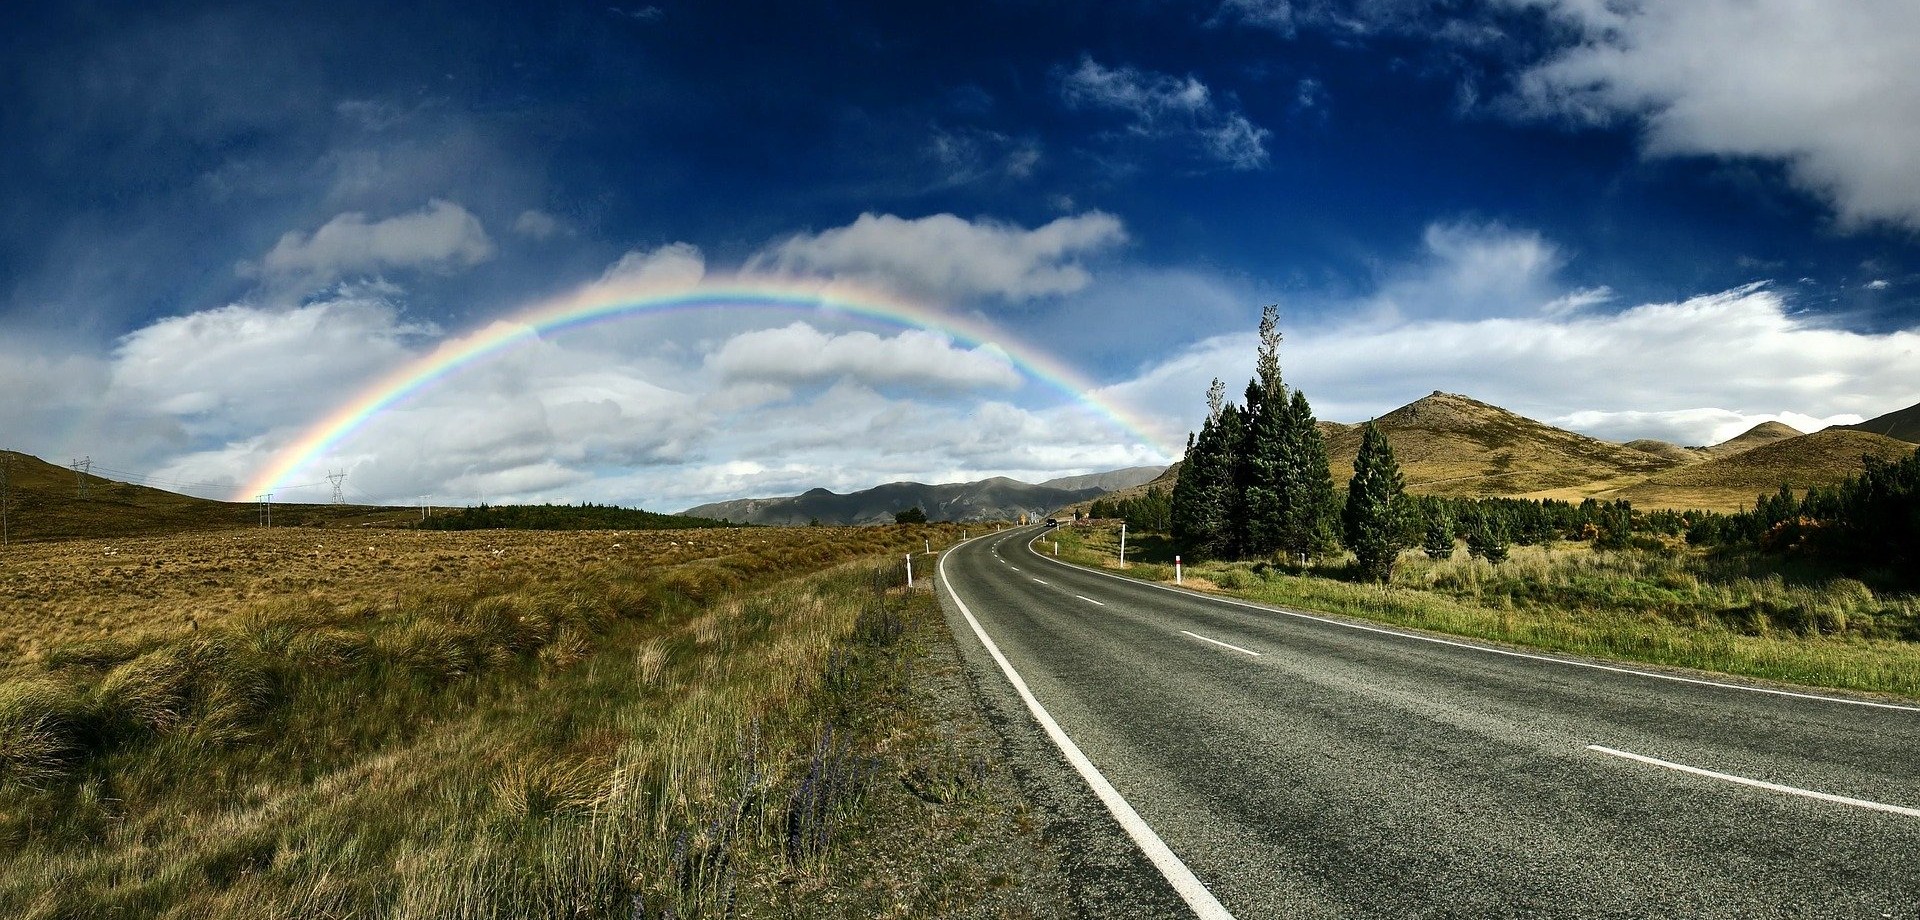 Durch eine karge Hügellandschaft führt eine langgezogene Straße und am Ende der Straße ist ein wunderschöner Regenbogen zu sehen